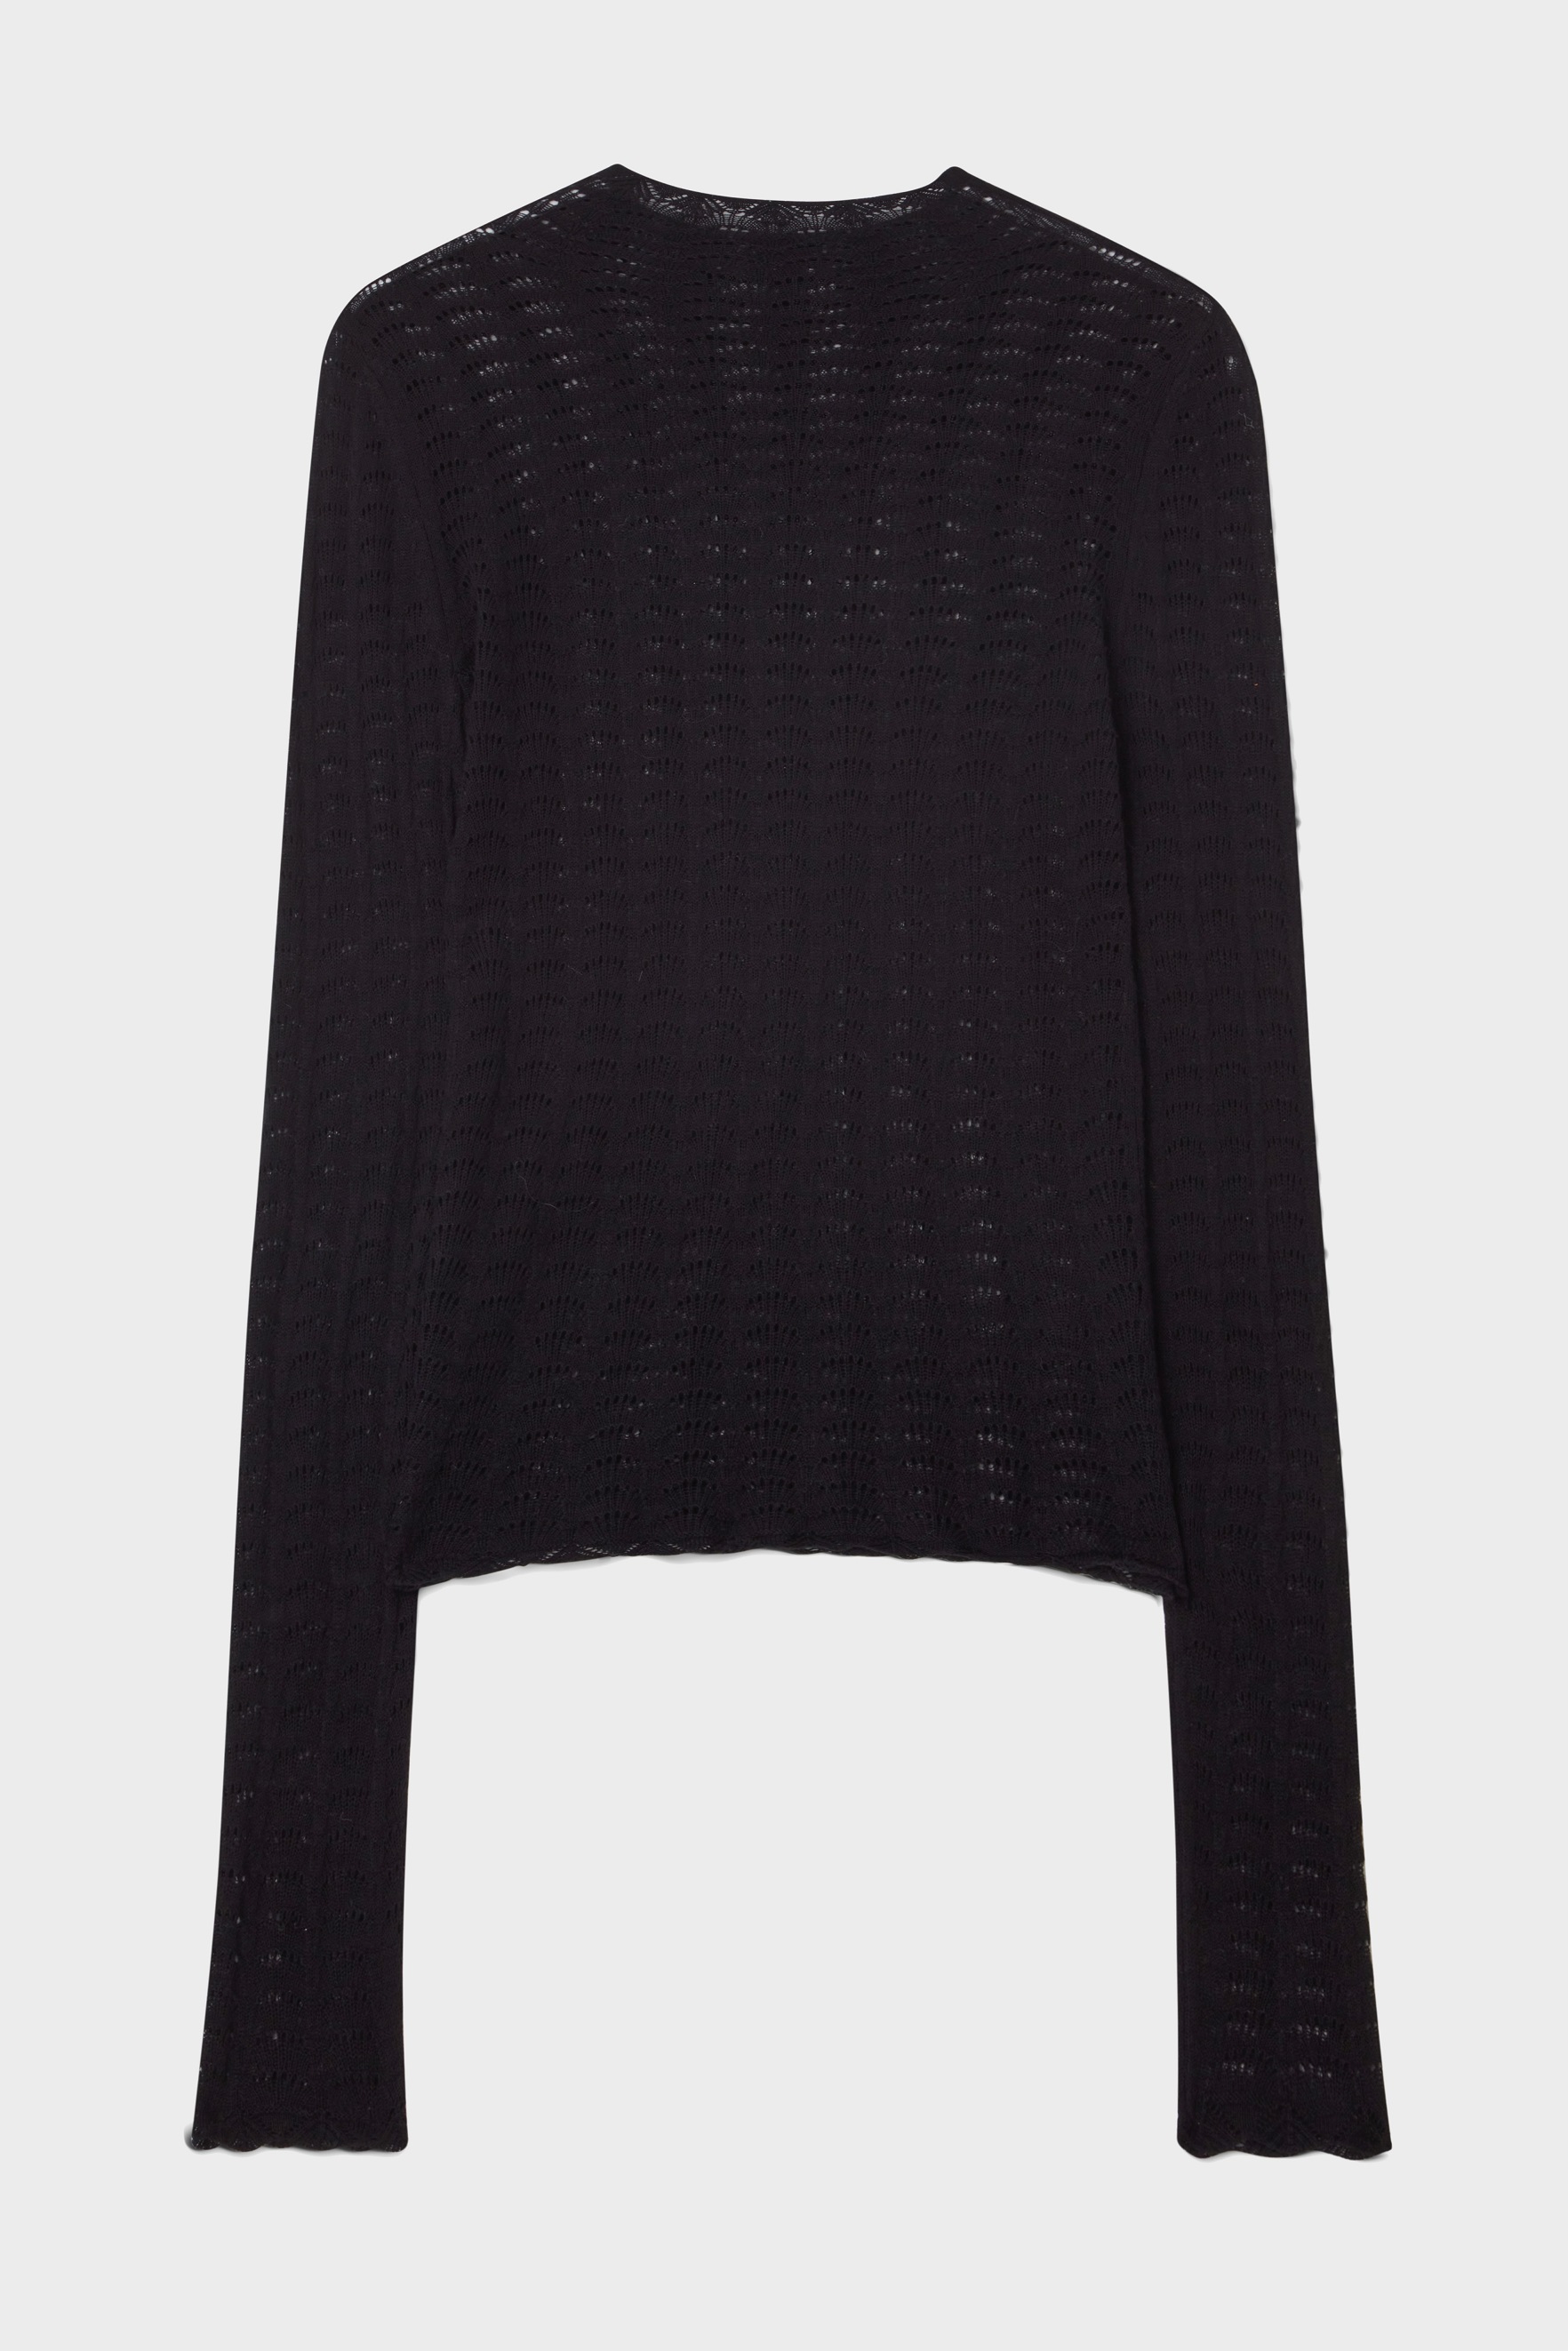 DAGMAR Lace Turtleneck Knit Sweater in Black S